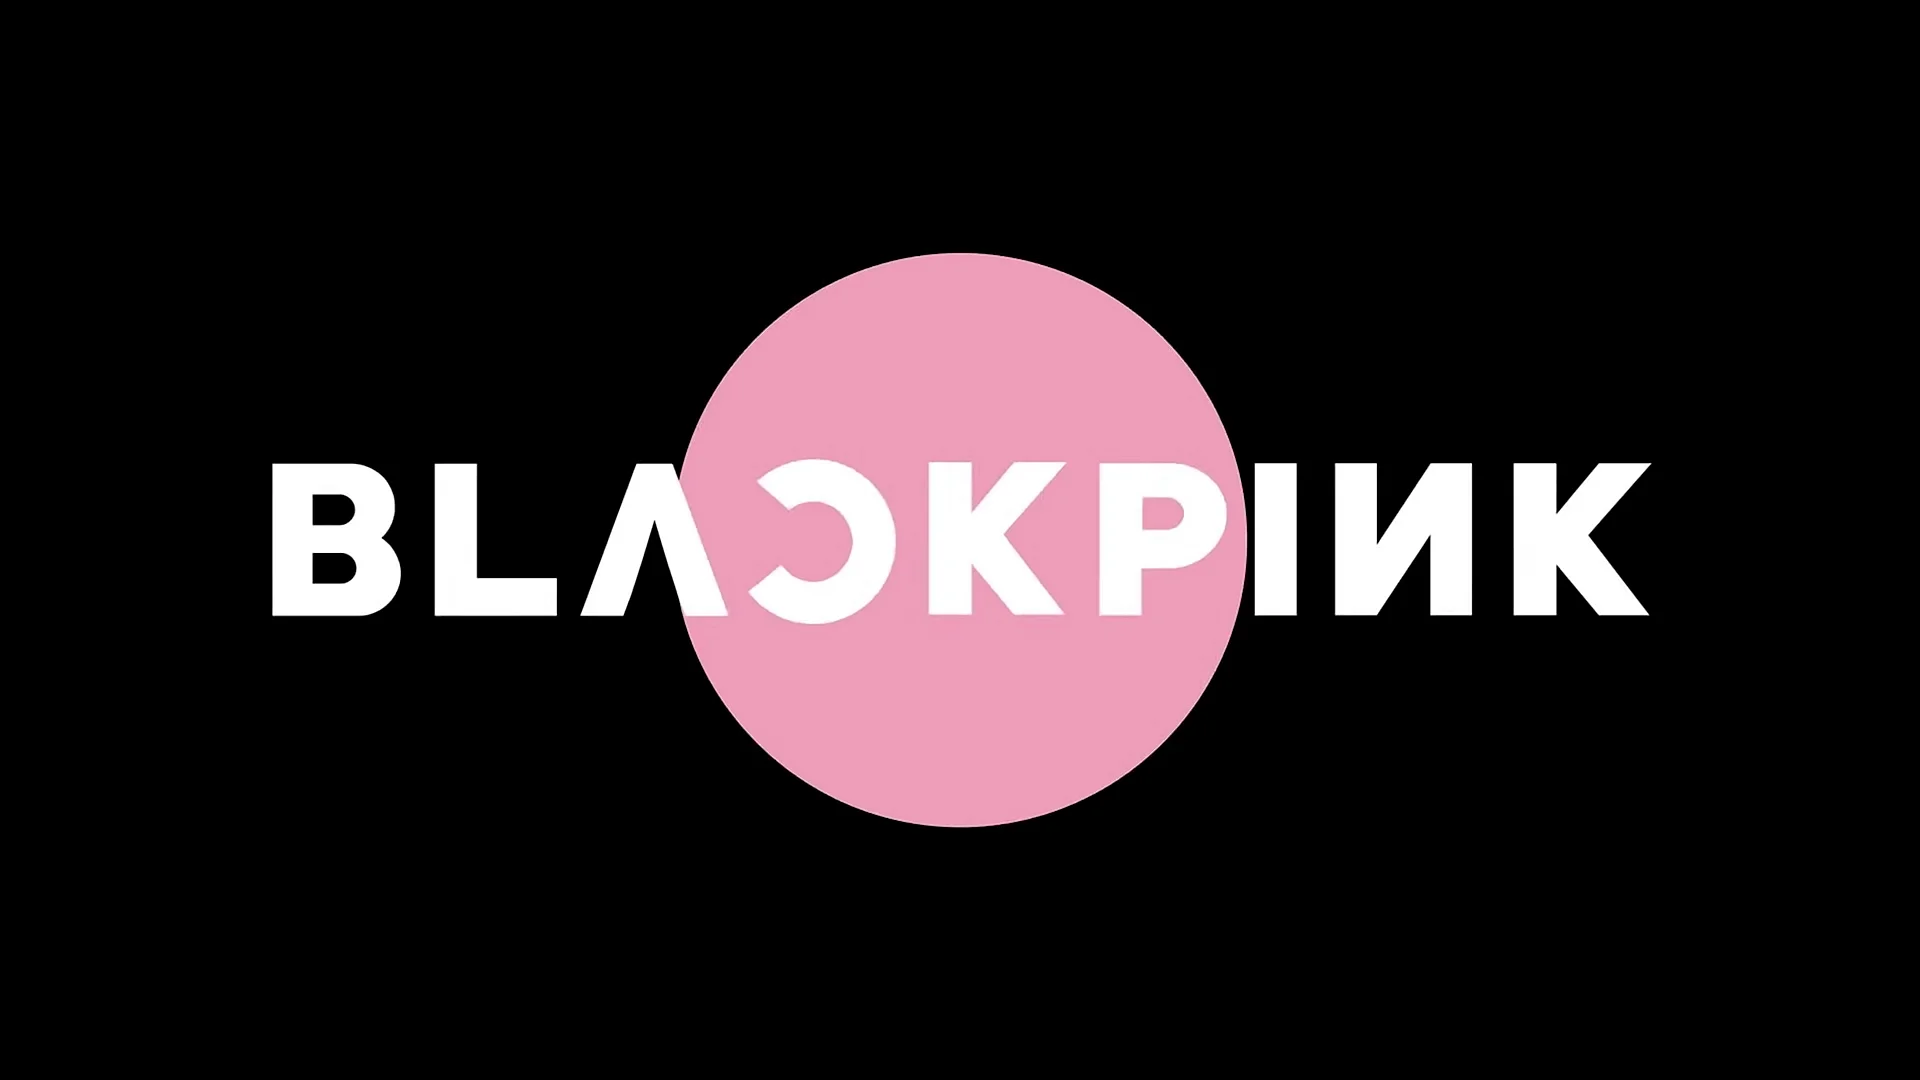 Download Blackpink Name Logo Wallpaper - WallpapersHigh